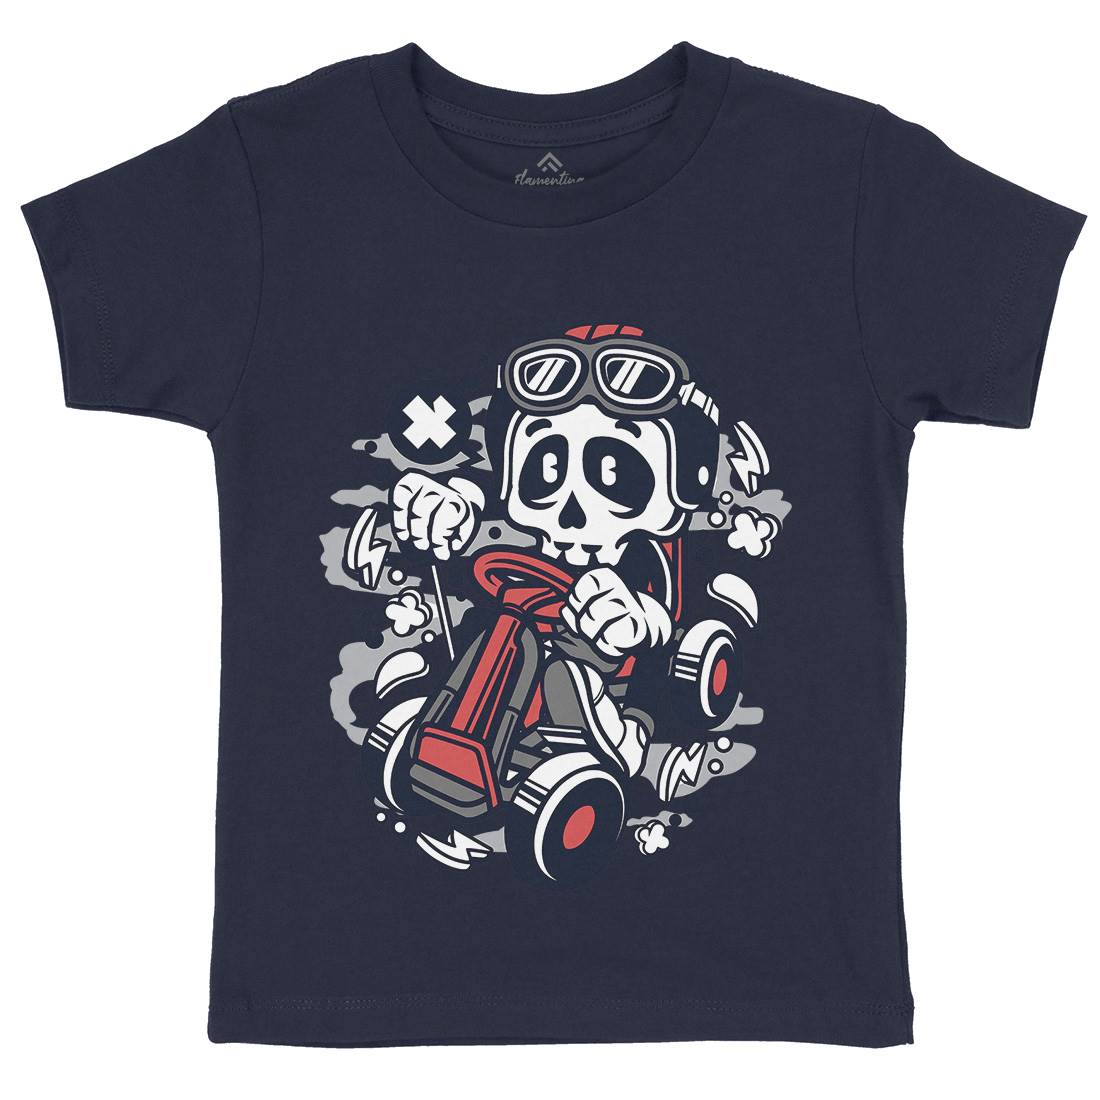 Go-Kart Skull Kids Crew Neck T-Shirt Sport C124